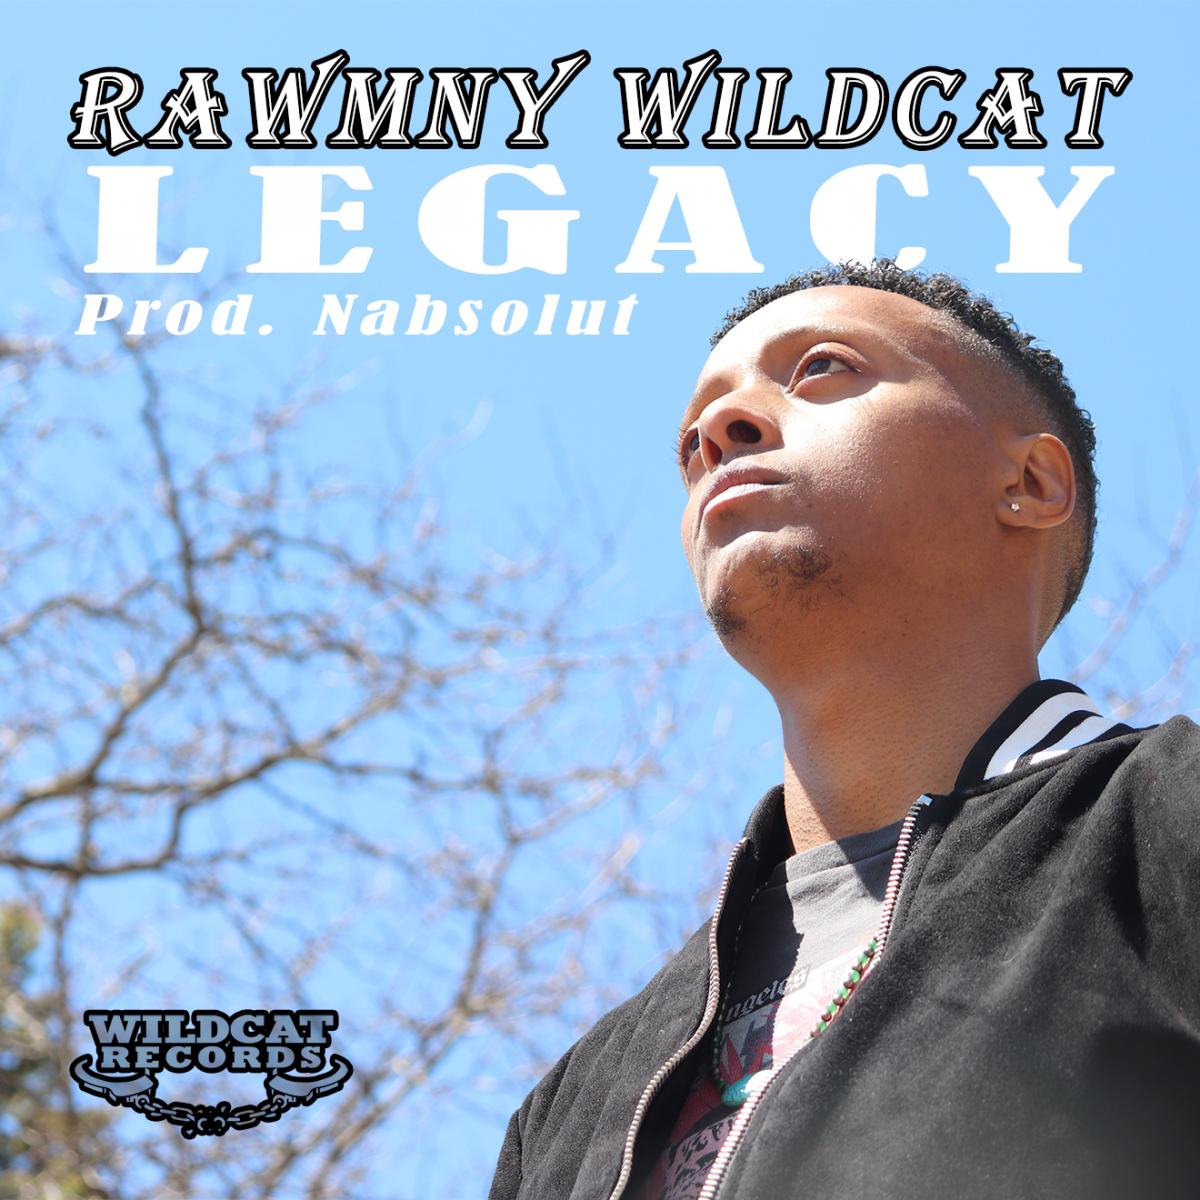 Rawmny Wildcat Legacy Prod. Nabsolut